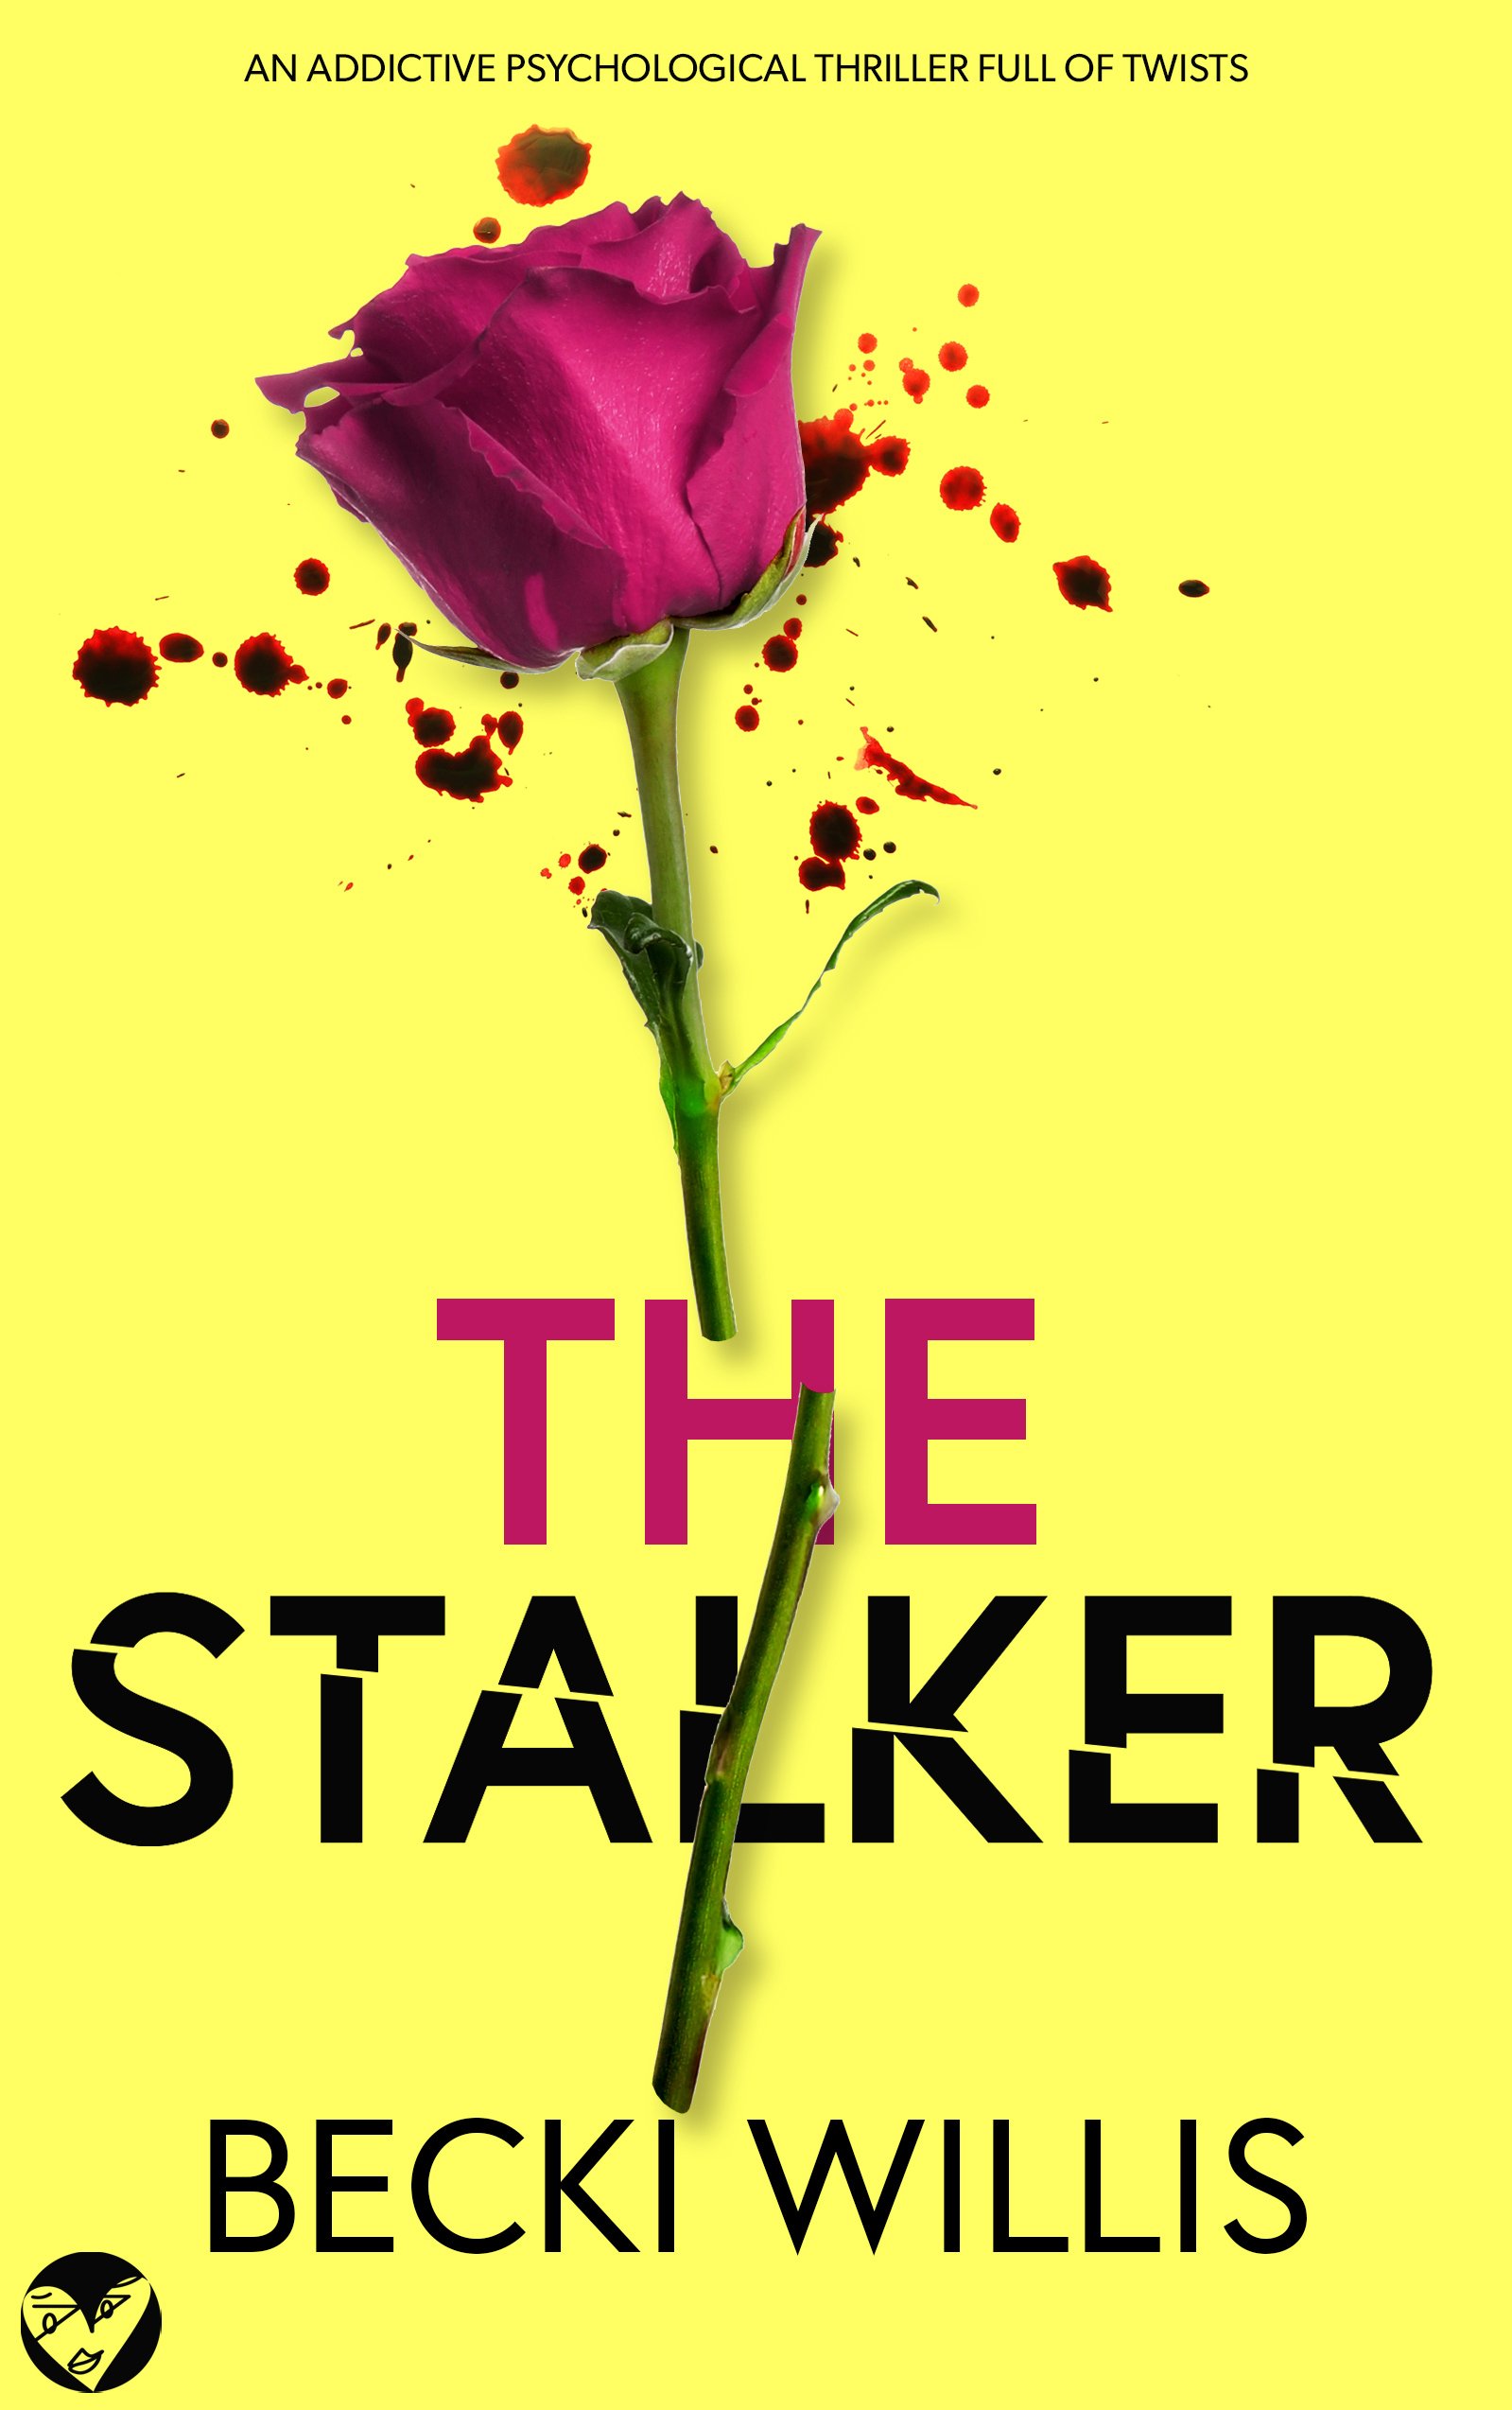 THE STALKER 550k cover publish (1).jpg